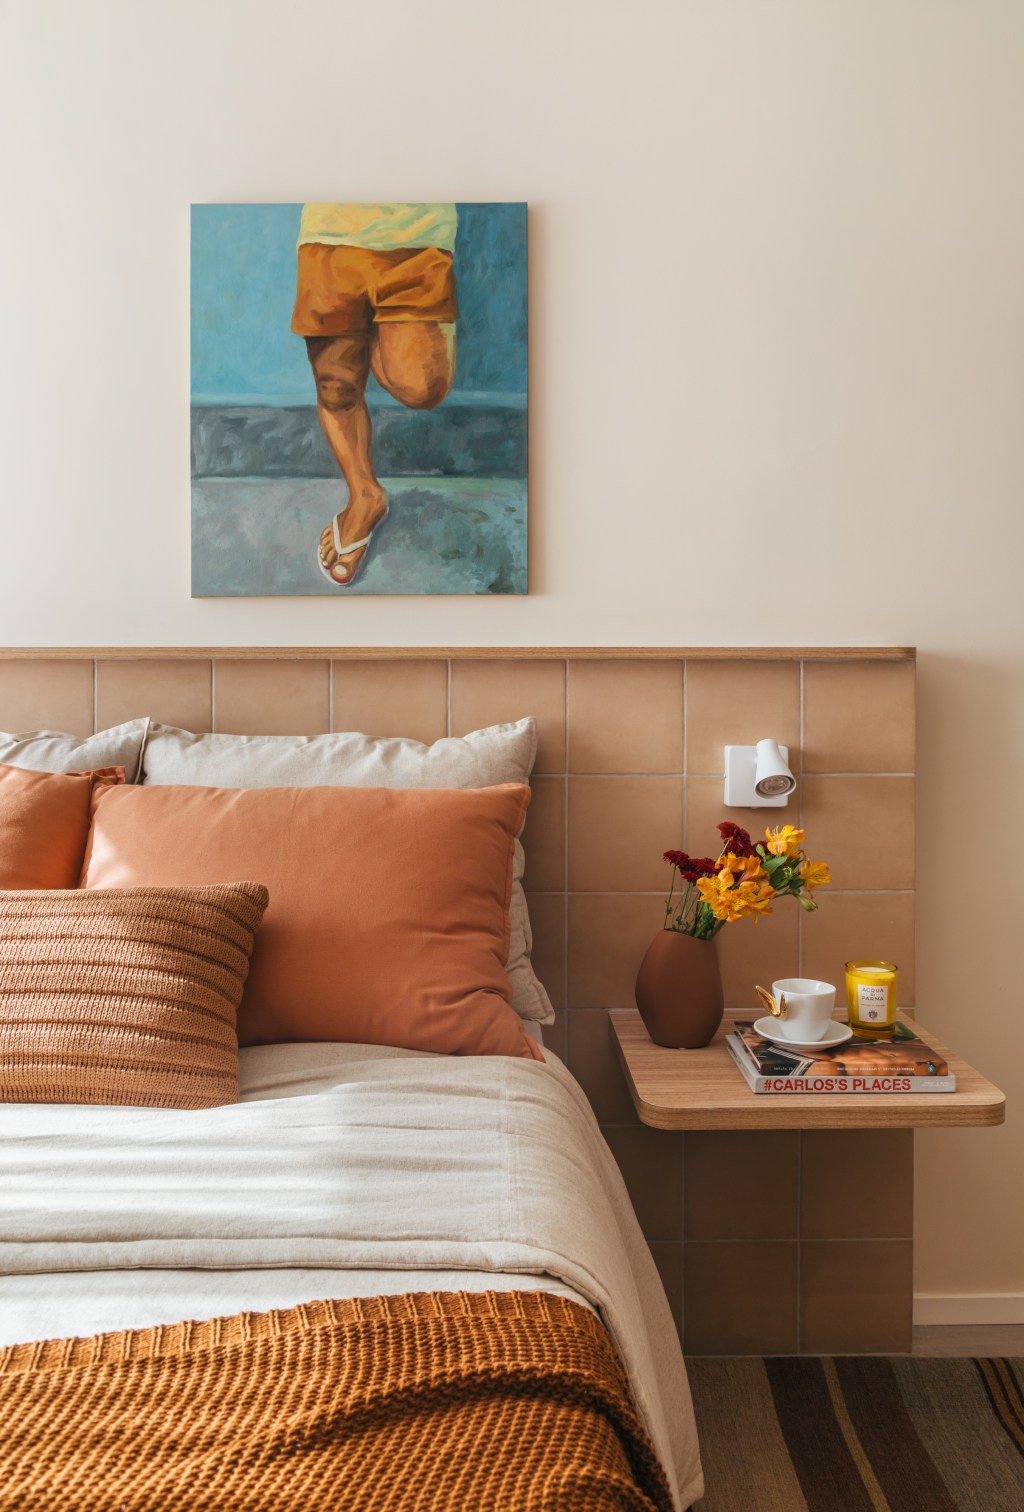 Micro apê de 25 m² tem cabeceira de azulejos e cozinha integrada ao quarto. Projeto de Rodolfo Consoli. Na foto, quarto com cabeceira revestida de azulejos,